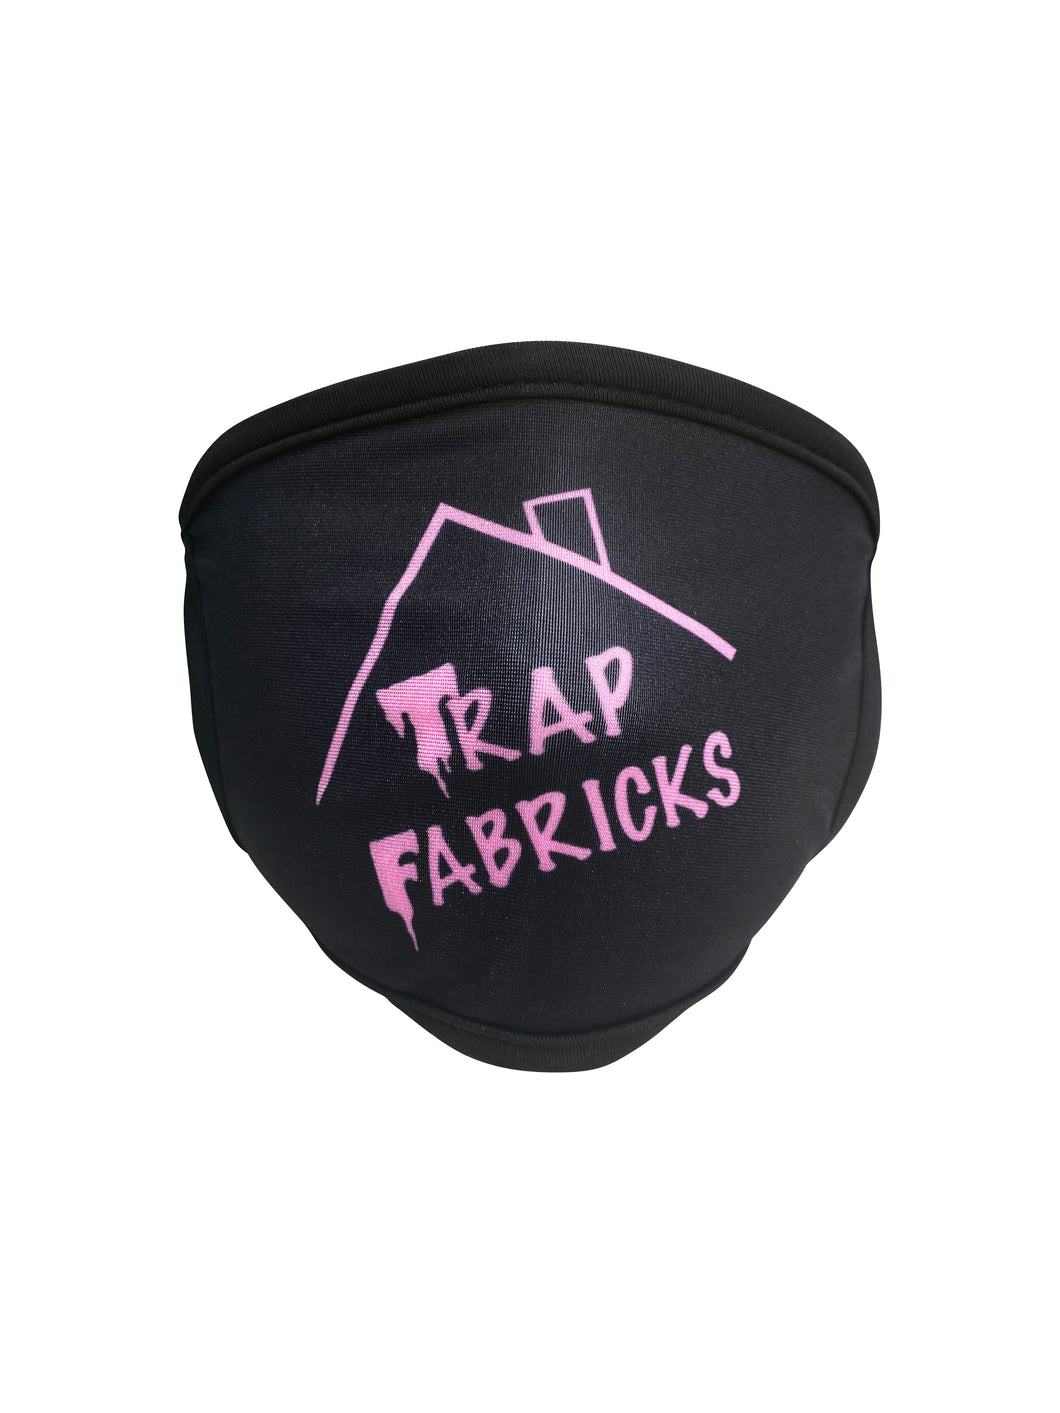 Trap Fabricks Logo Face Cover